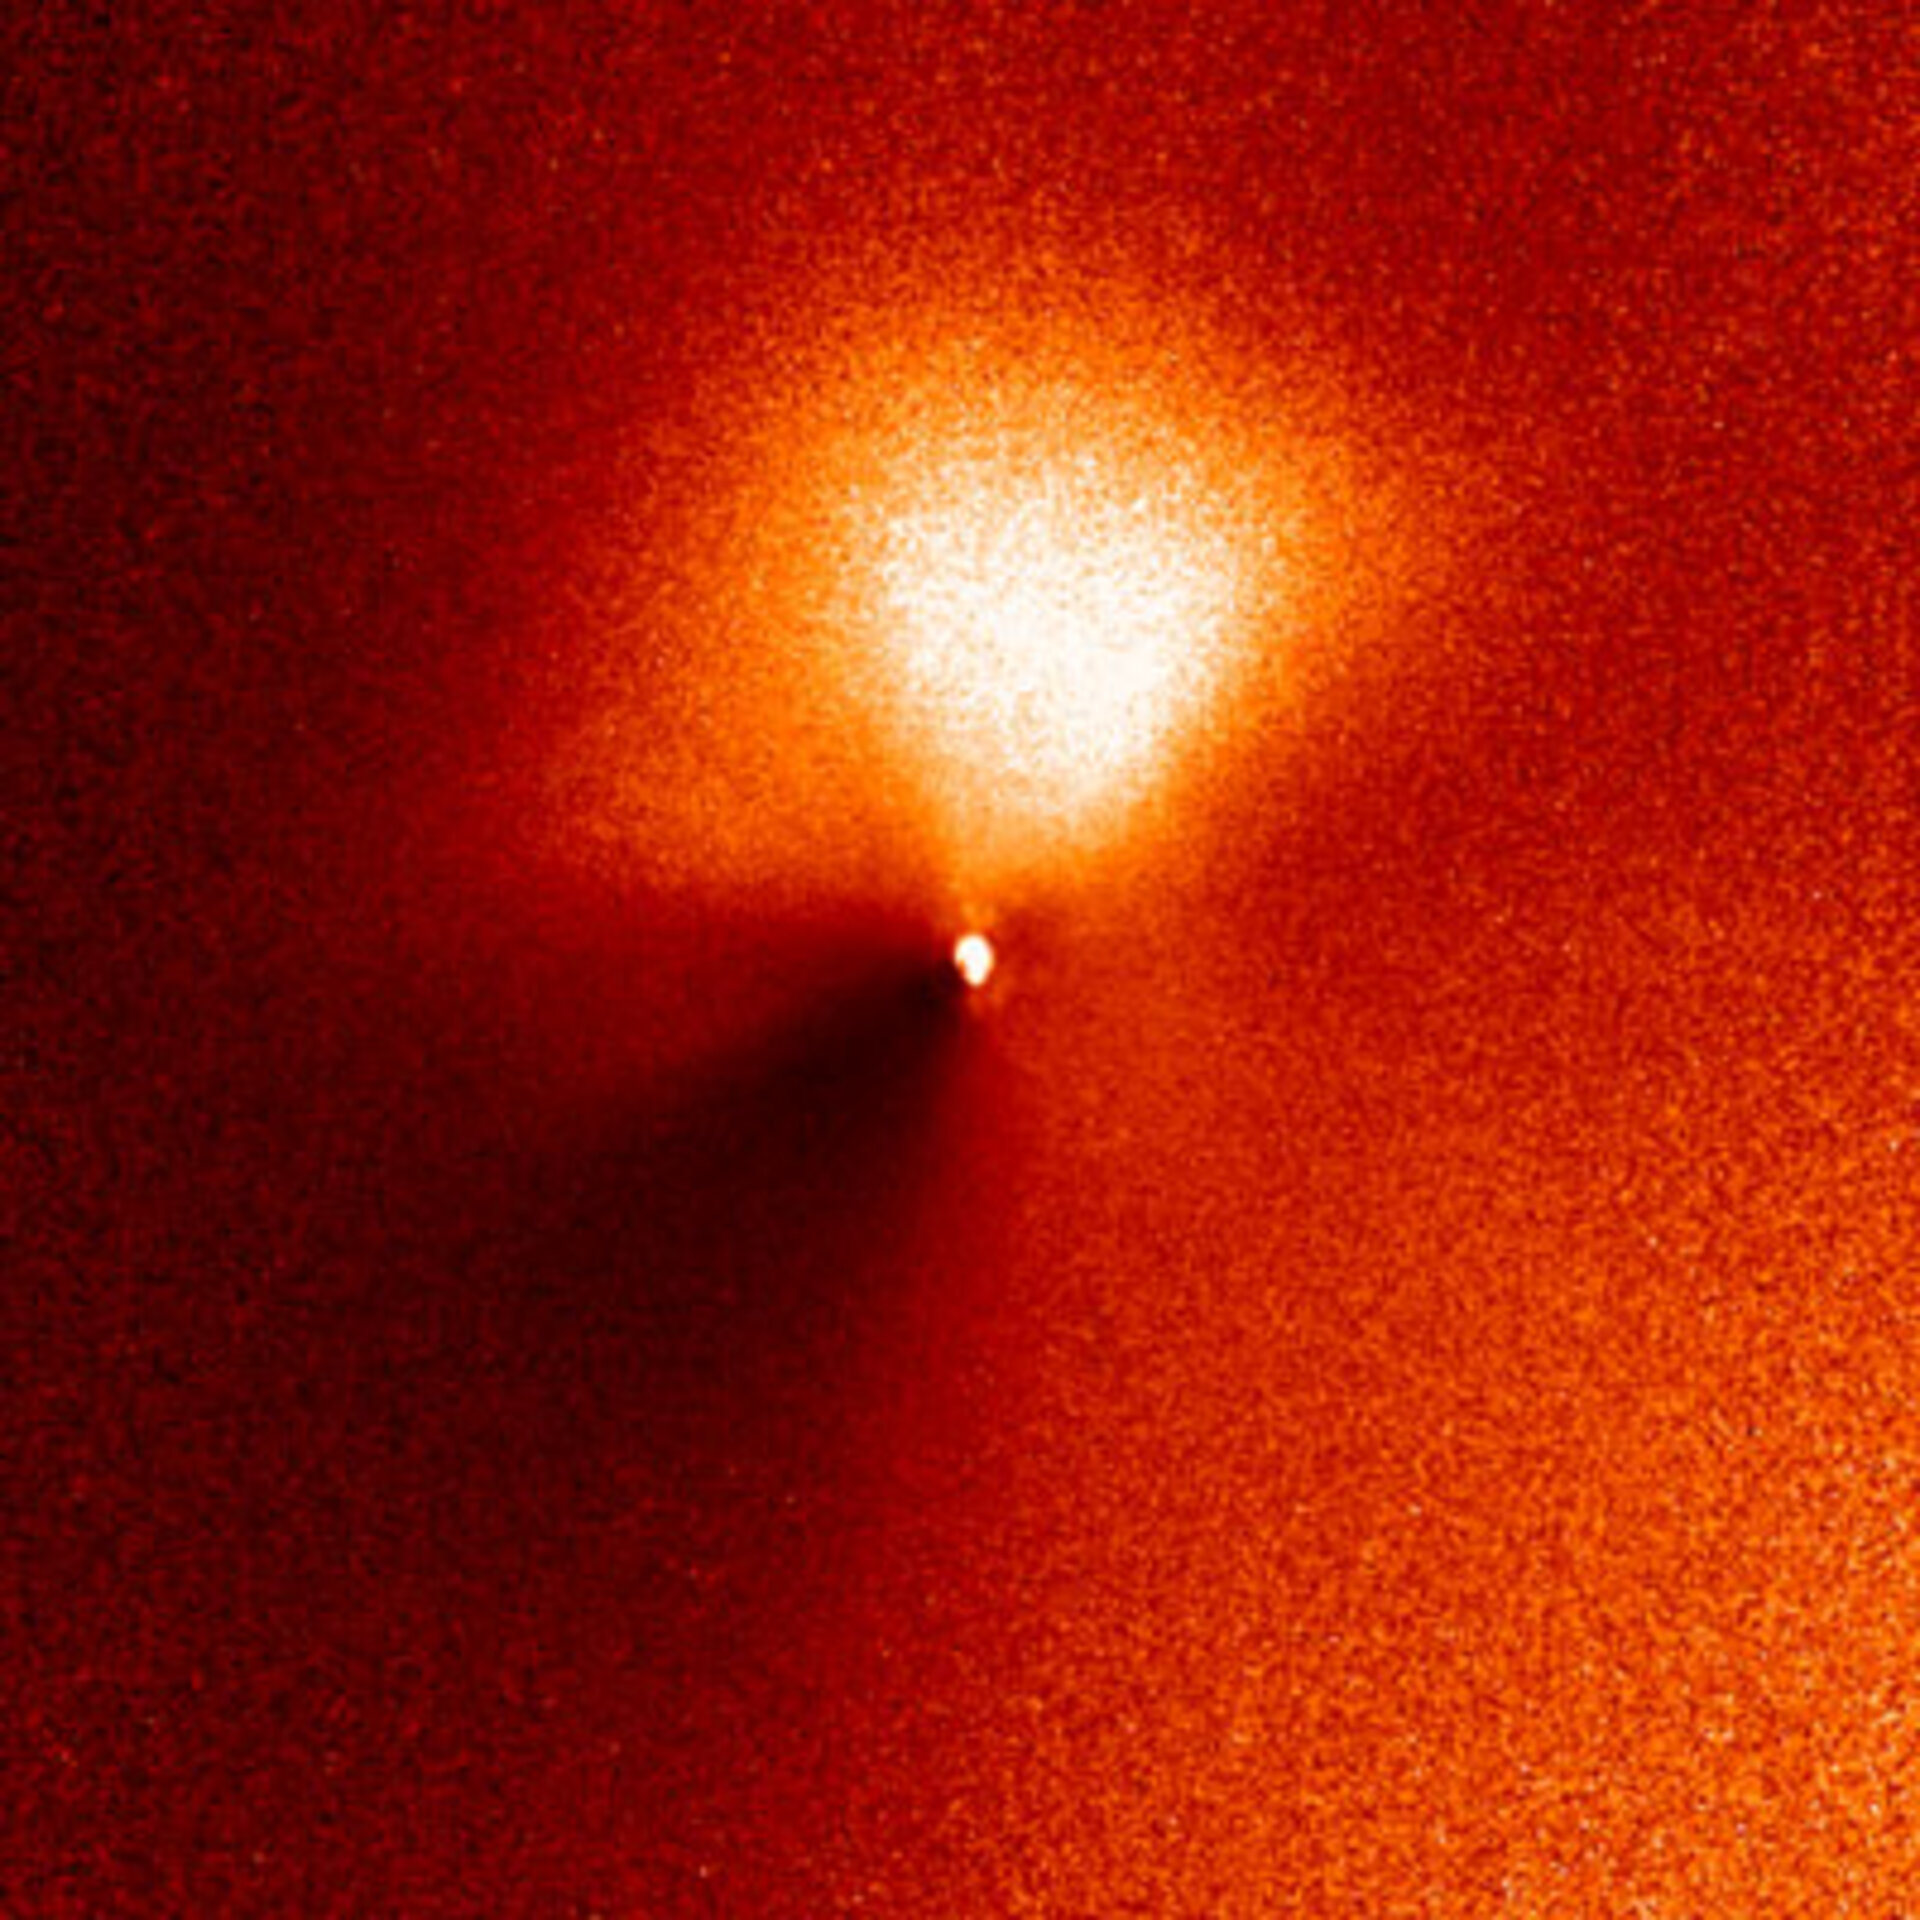 Een uitbarsting op de komeet 9P/Tempel 1, gefotografeerd door de NASA-ESA Hubble Space Telescope